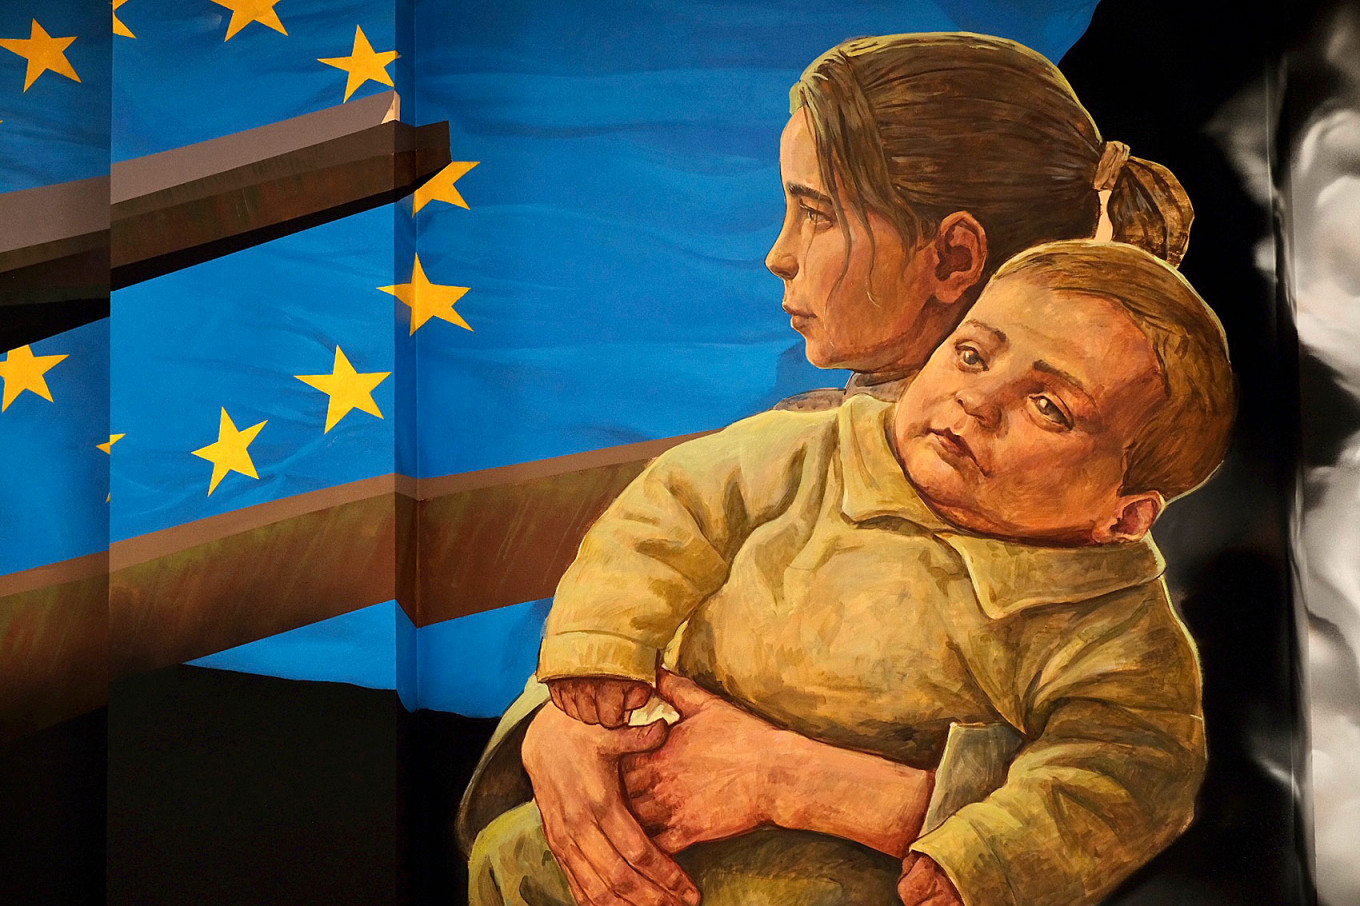 Mural called "Women with child".  Anastasia Tenisheva